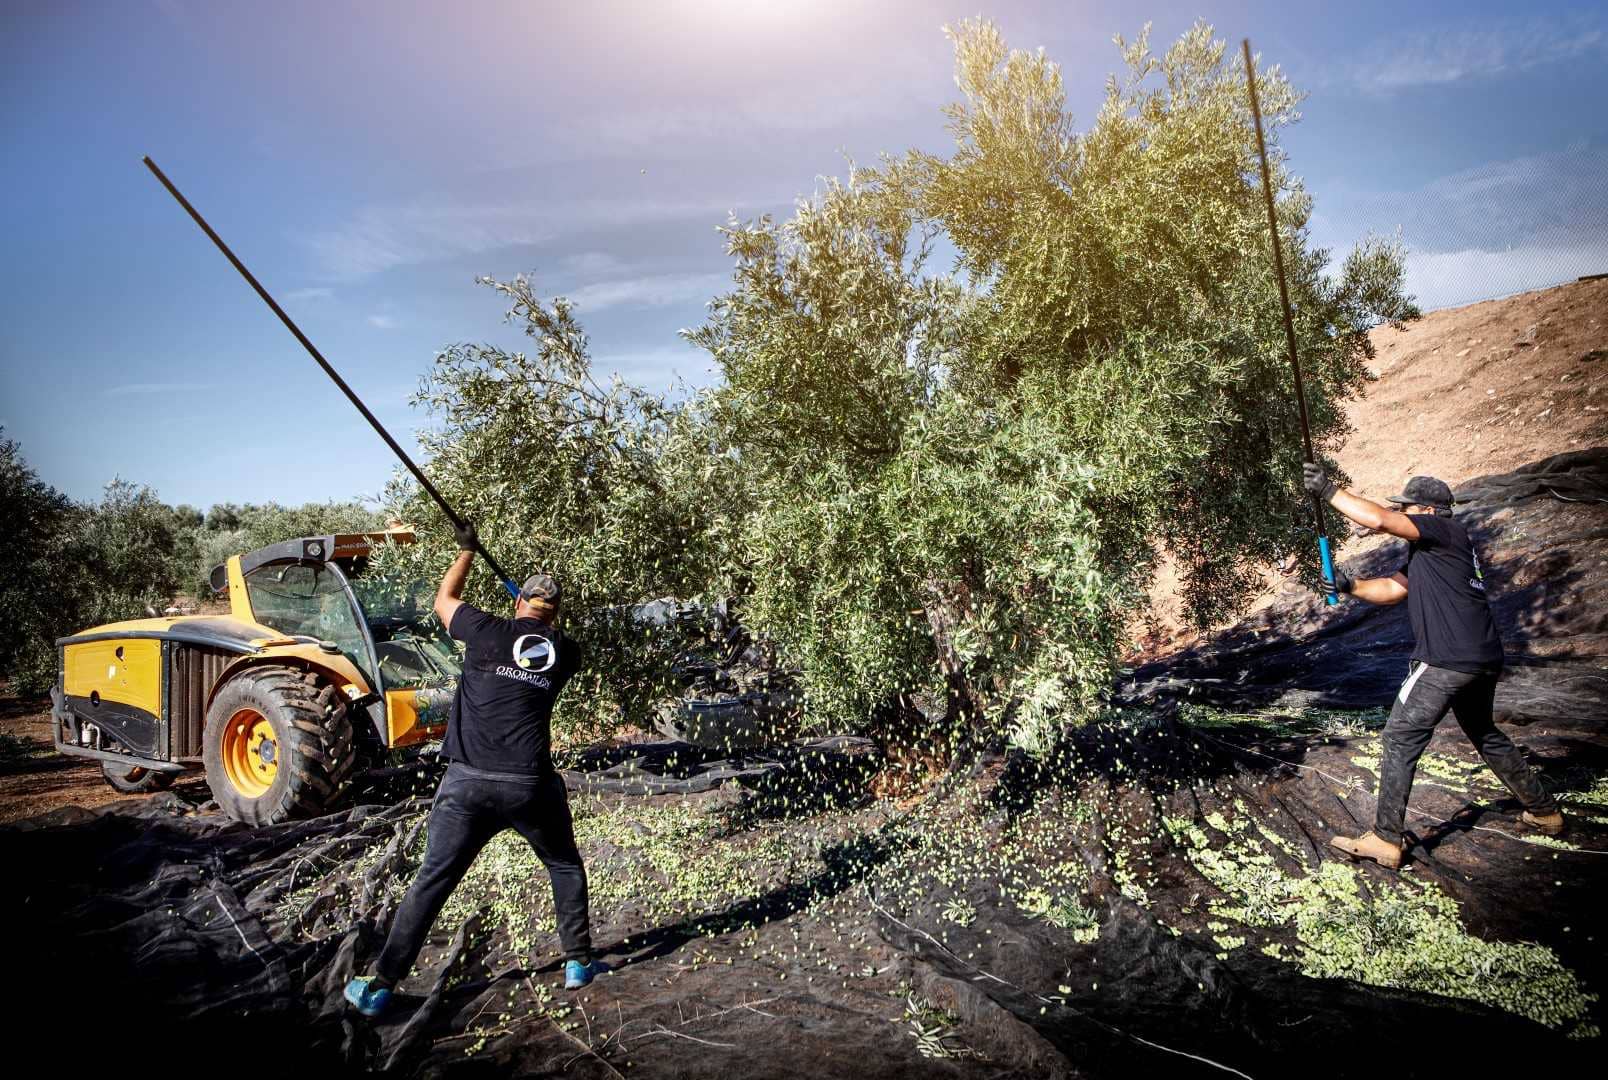 europa-die-besten-olivenölwettbewerbe-andalusische-produzenten-uberwinden-hindernisse-um-2021-zu-siegen-nyiooc-olive-Öl-Zeiten